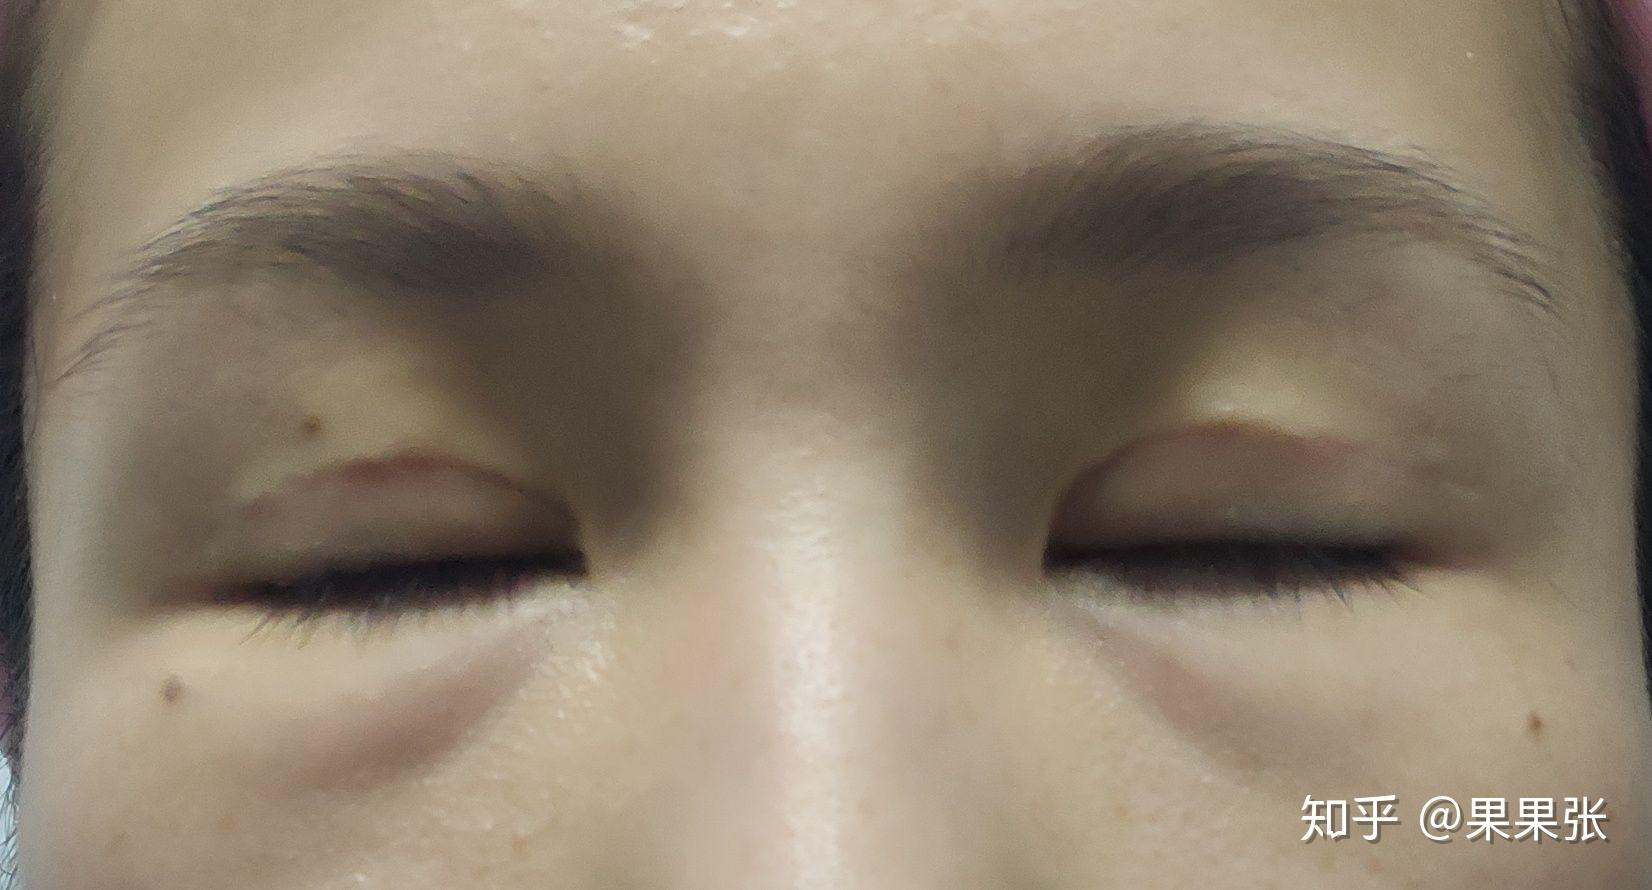 全切双眼皮全程＋术后护理🙌这样闭眼无痕 真是没想_圈子-新氧美容整形